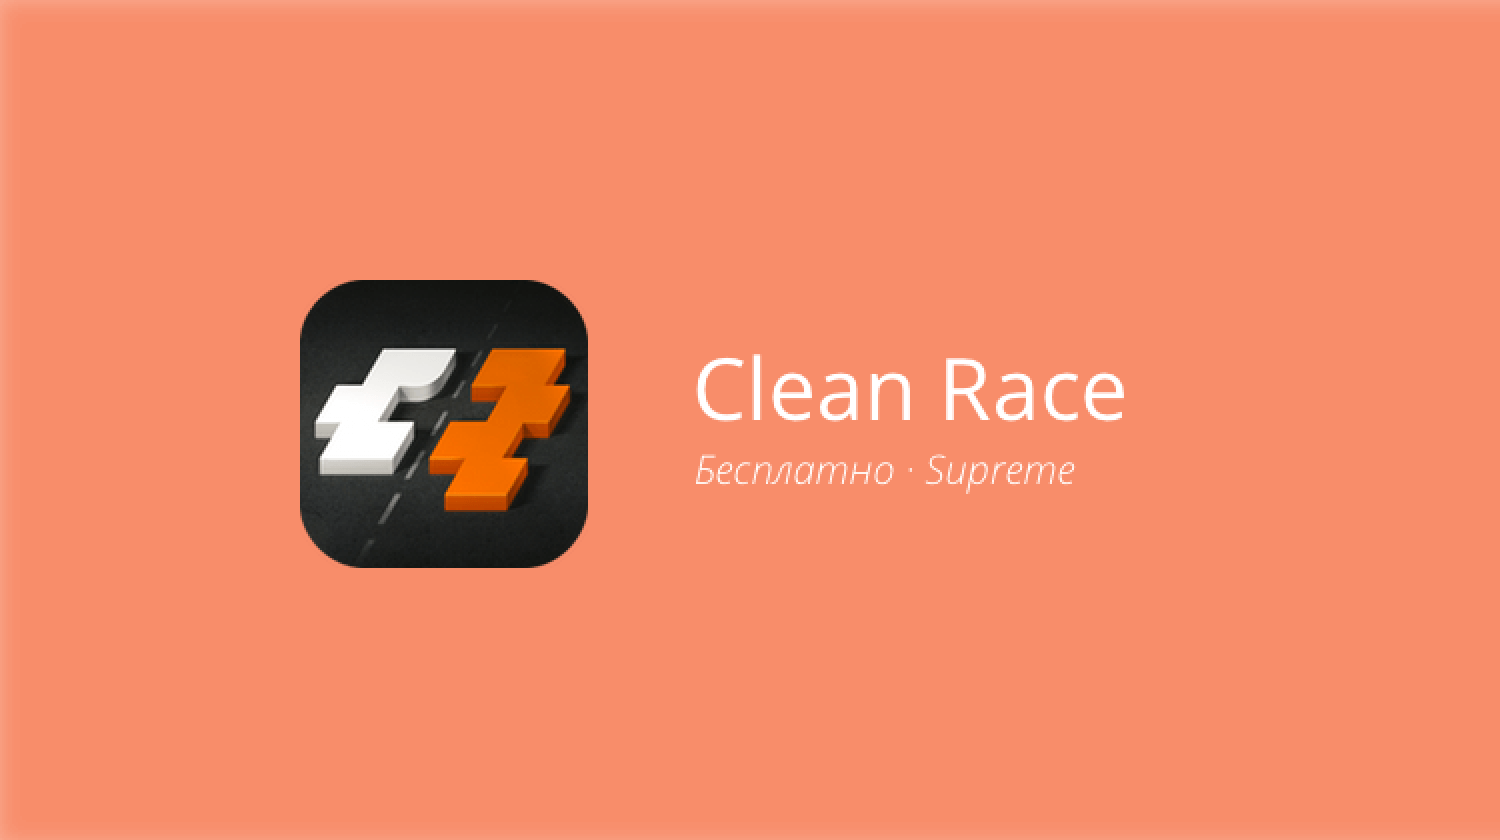 Clean Race